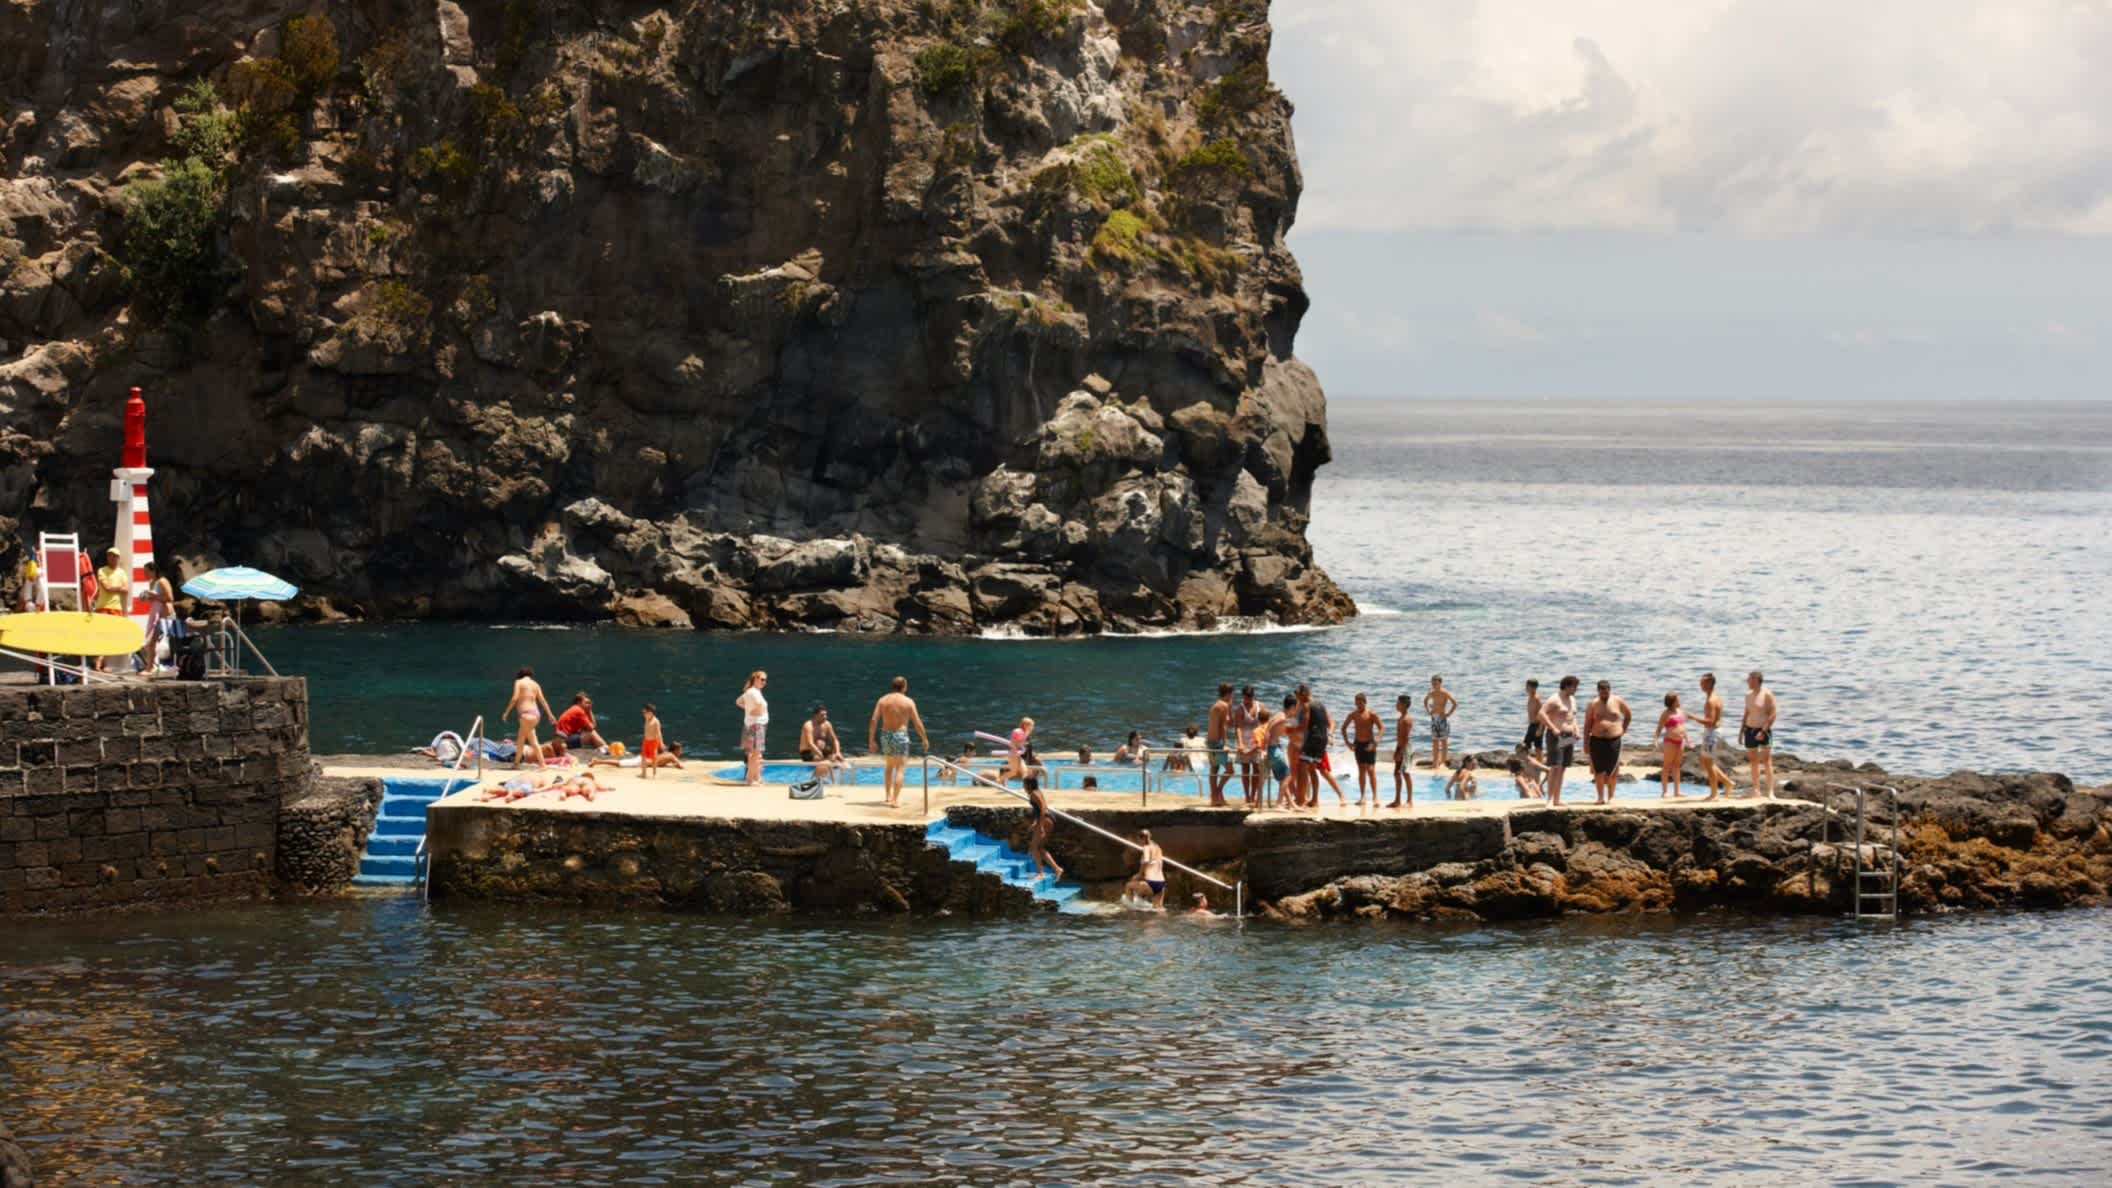 Natürliches Schwimmbad mit Menschen am Pool im Atlantischen Ozean in Caloura, Sao Miguel, Azoren, Portugal.

